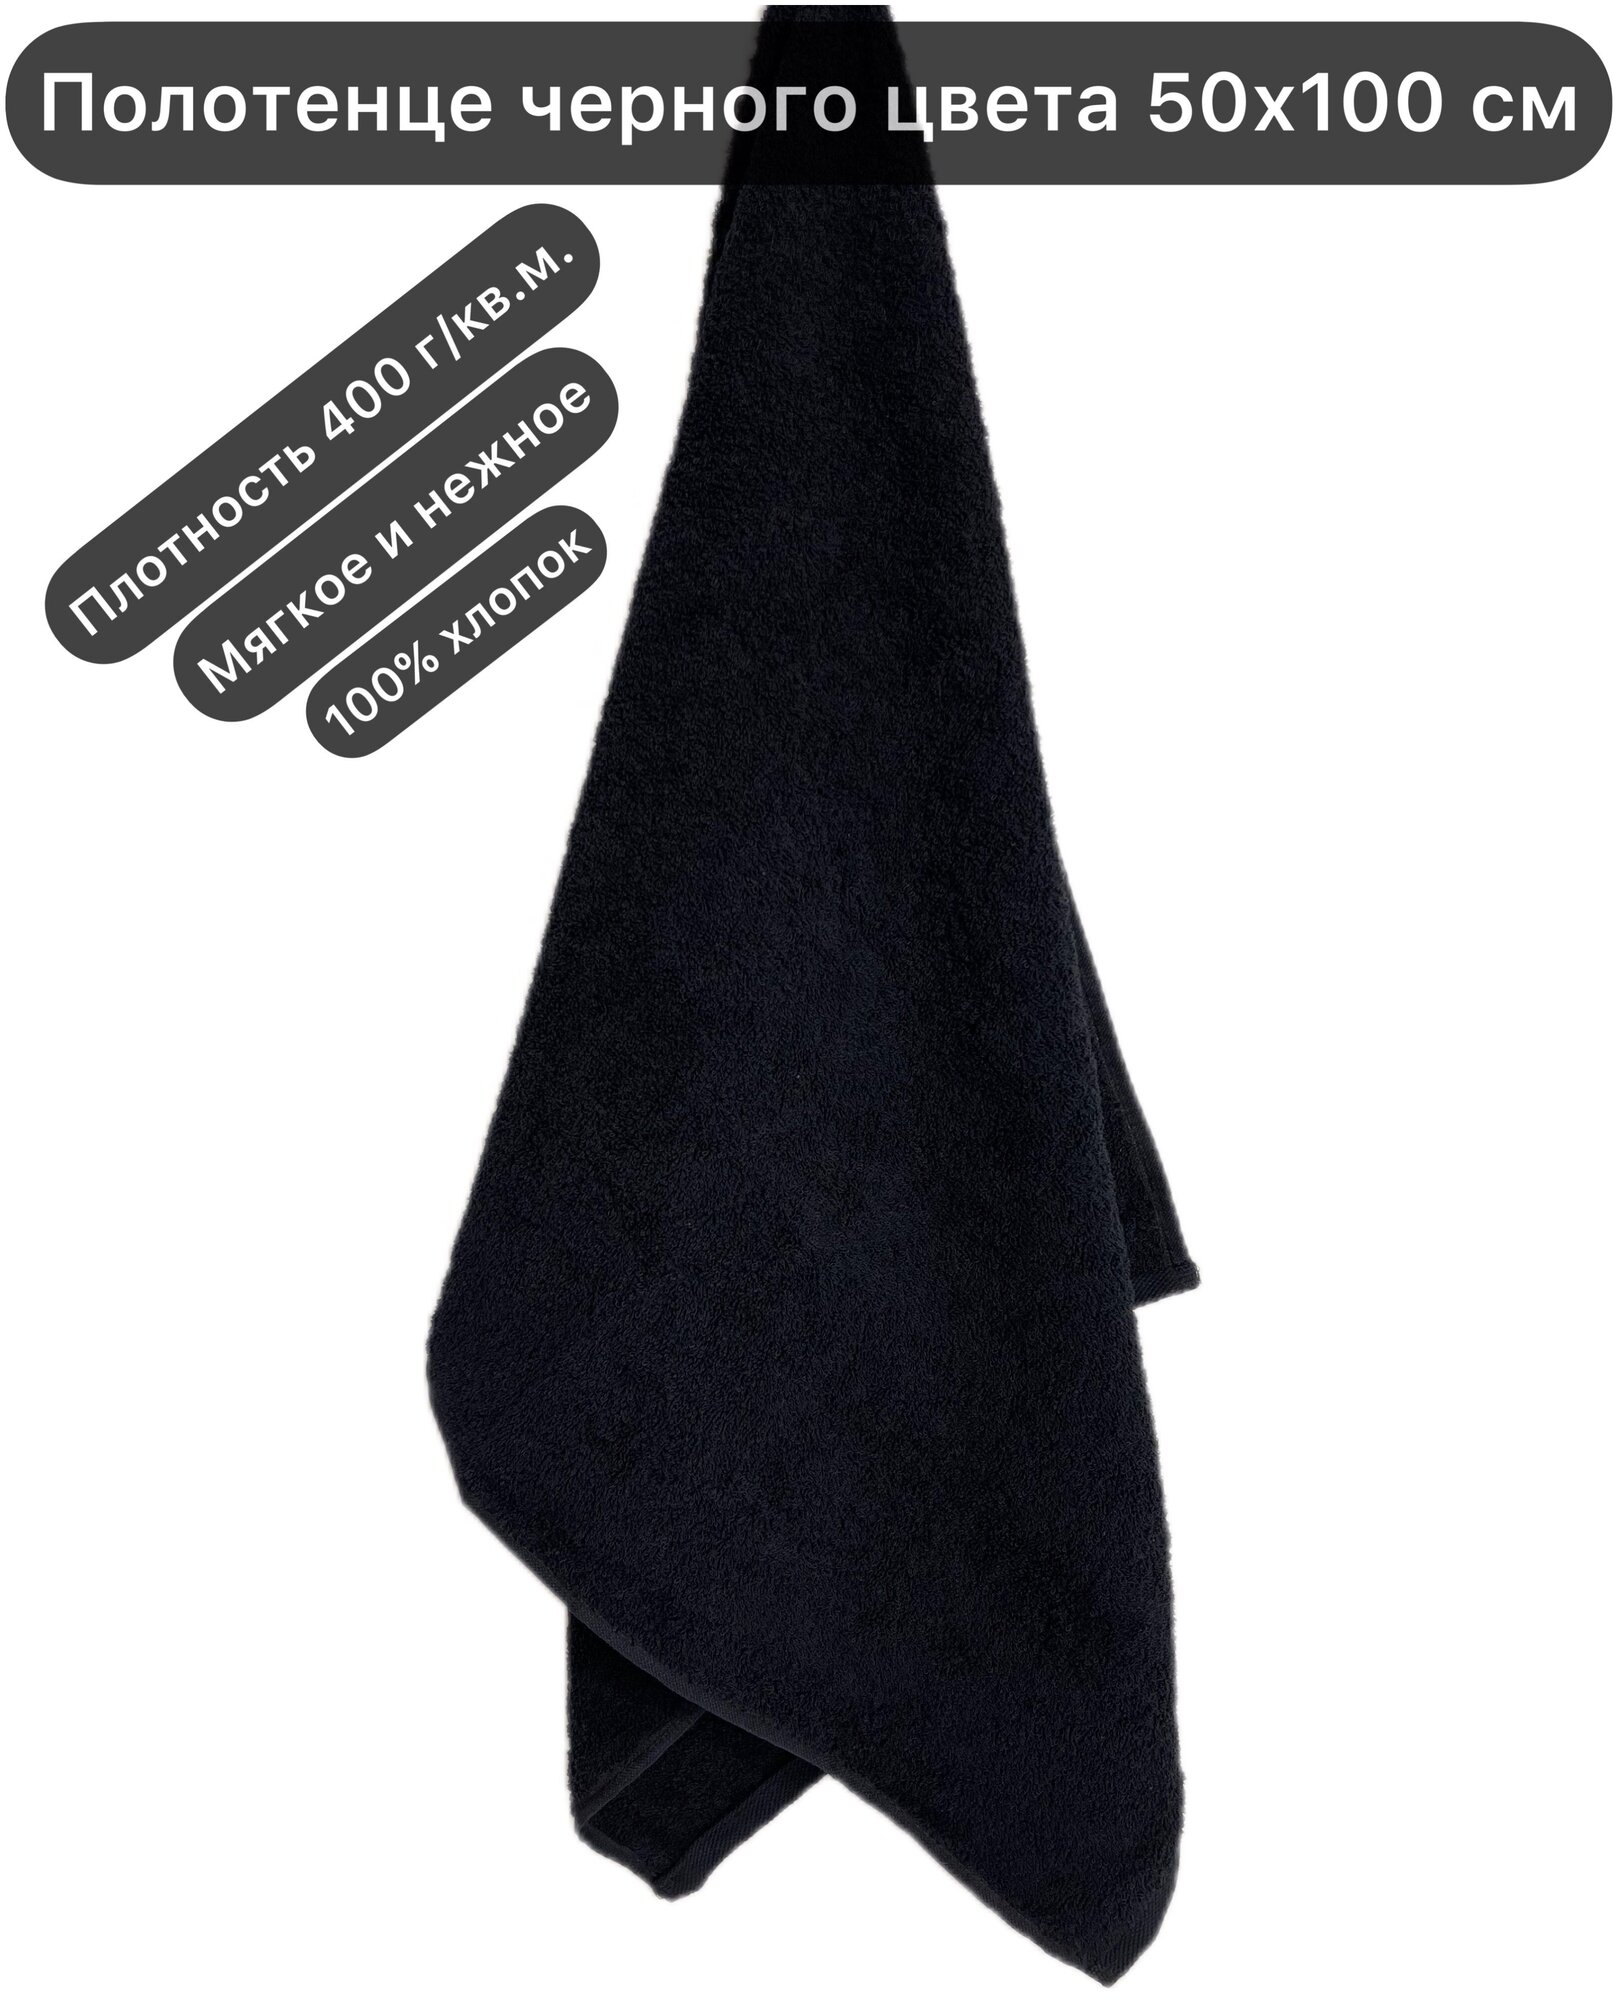 Полотенце махровое черное 50х100 см (для лица или головы) 400 г/кв. м, Вышневолоцкий текстиль, 100% хлопок